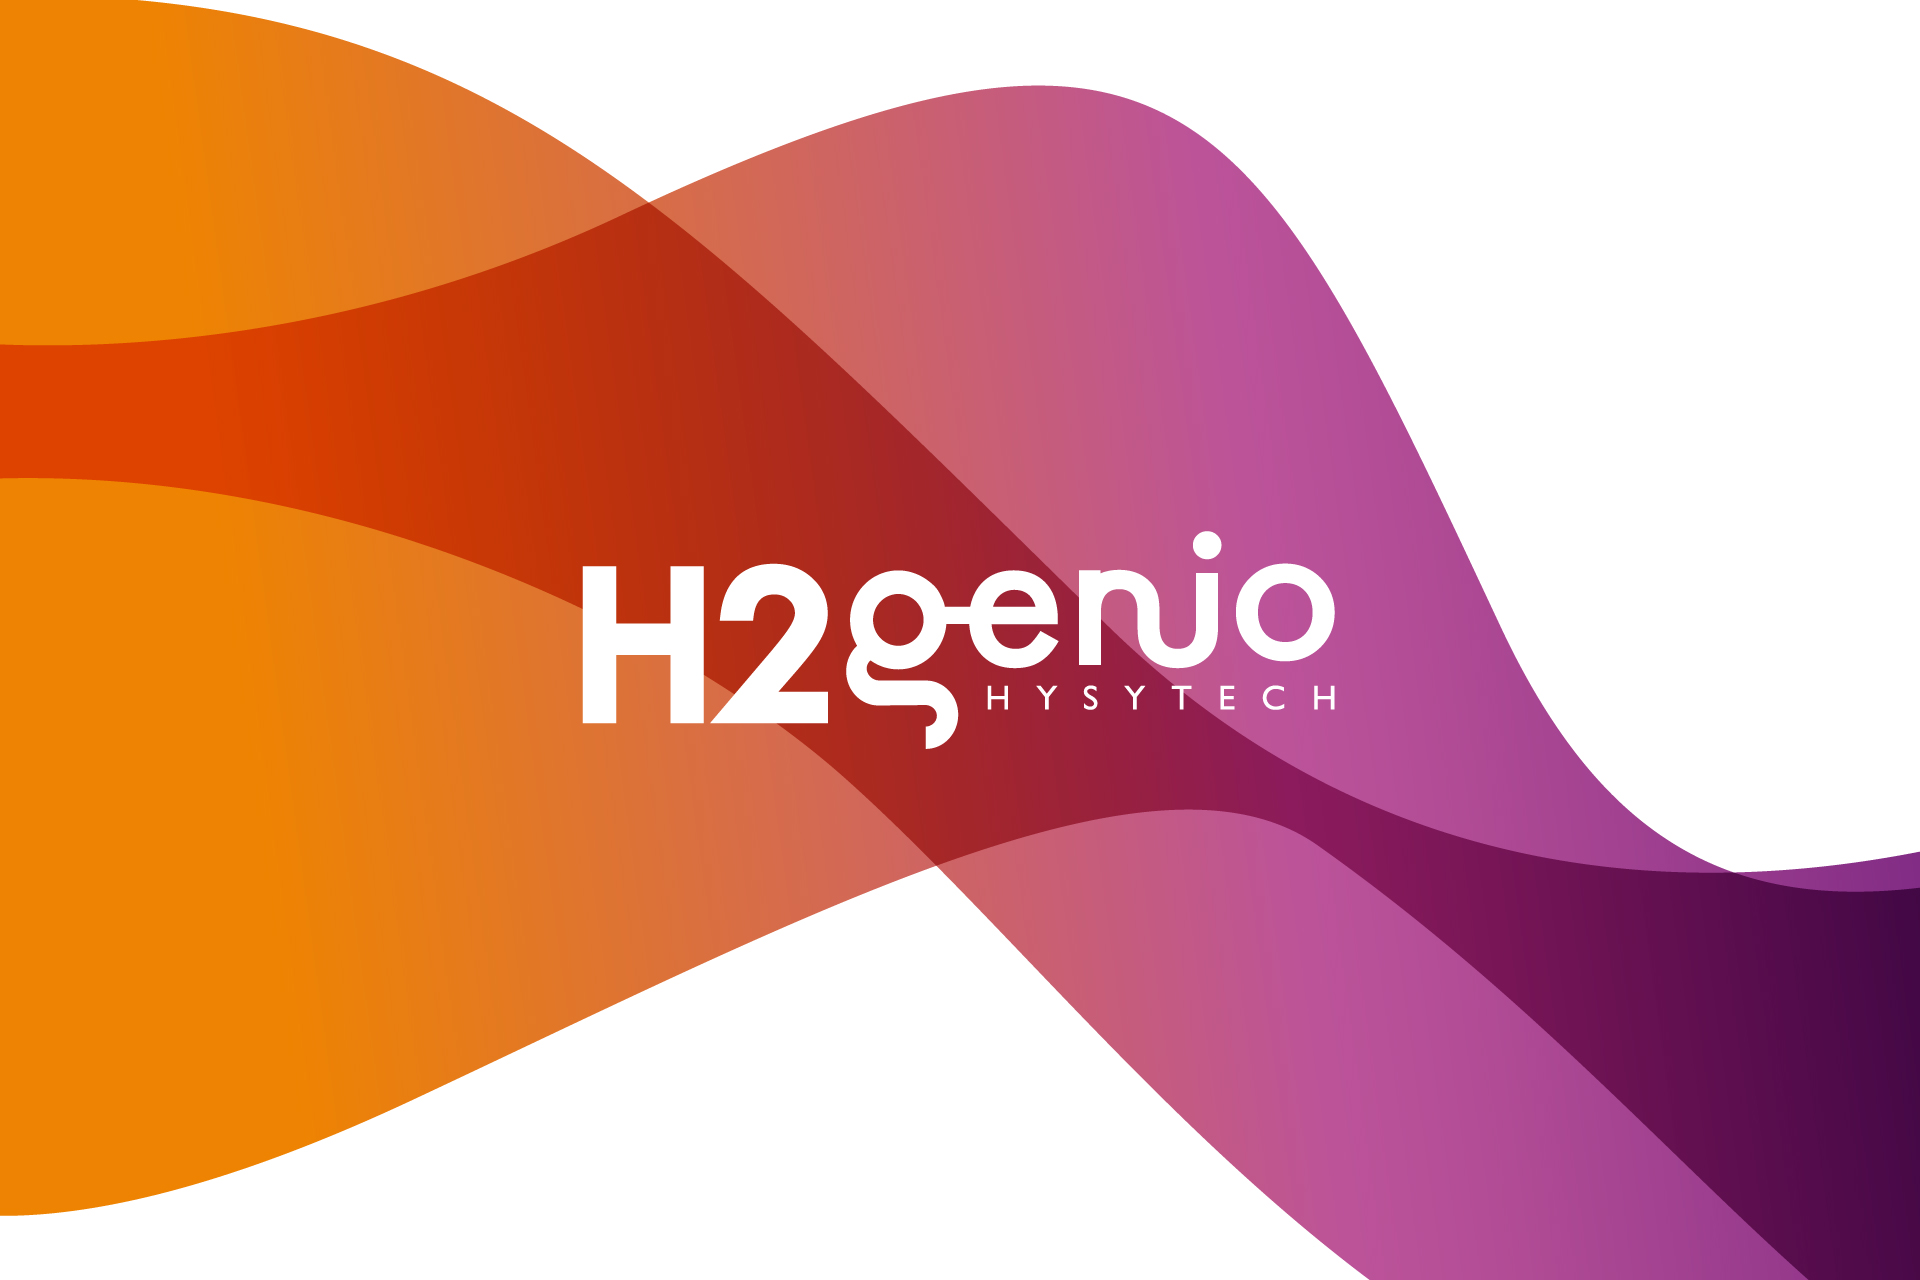 (c) H2genio.com